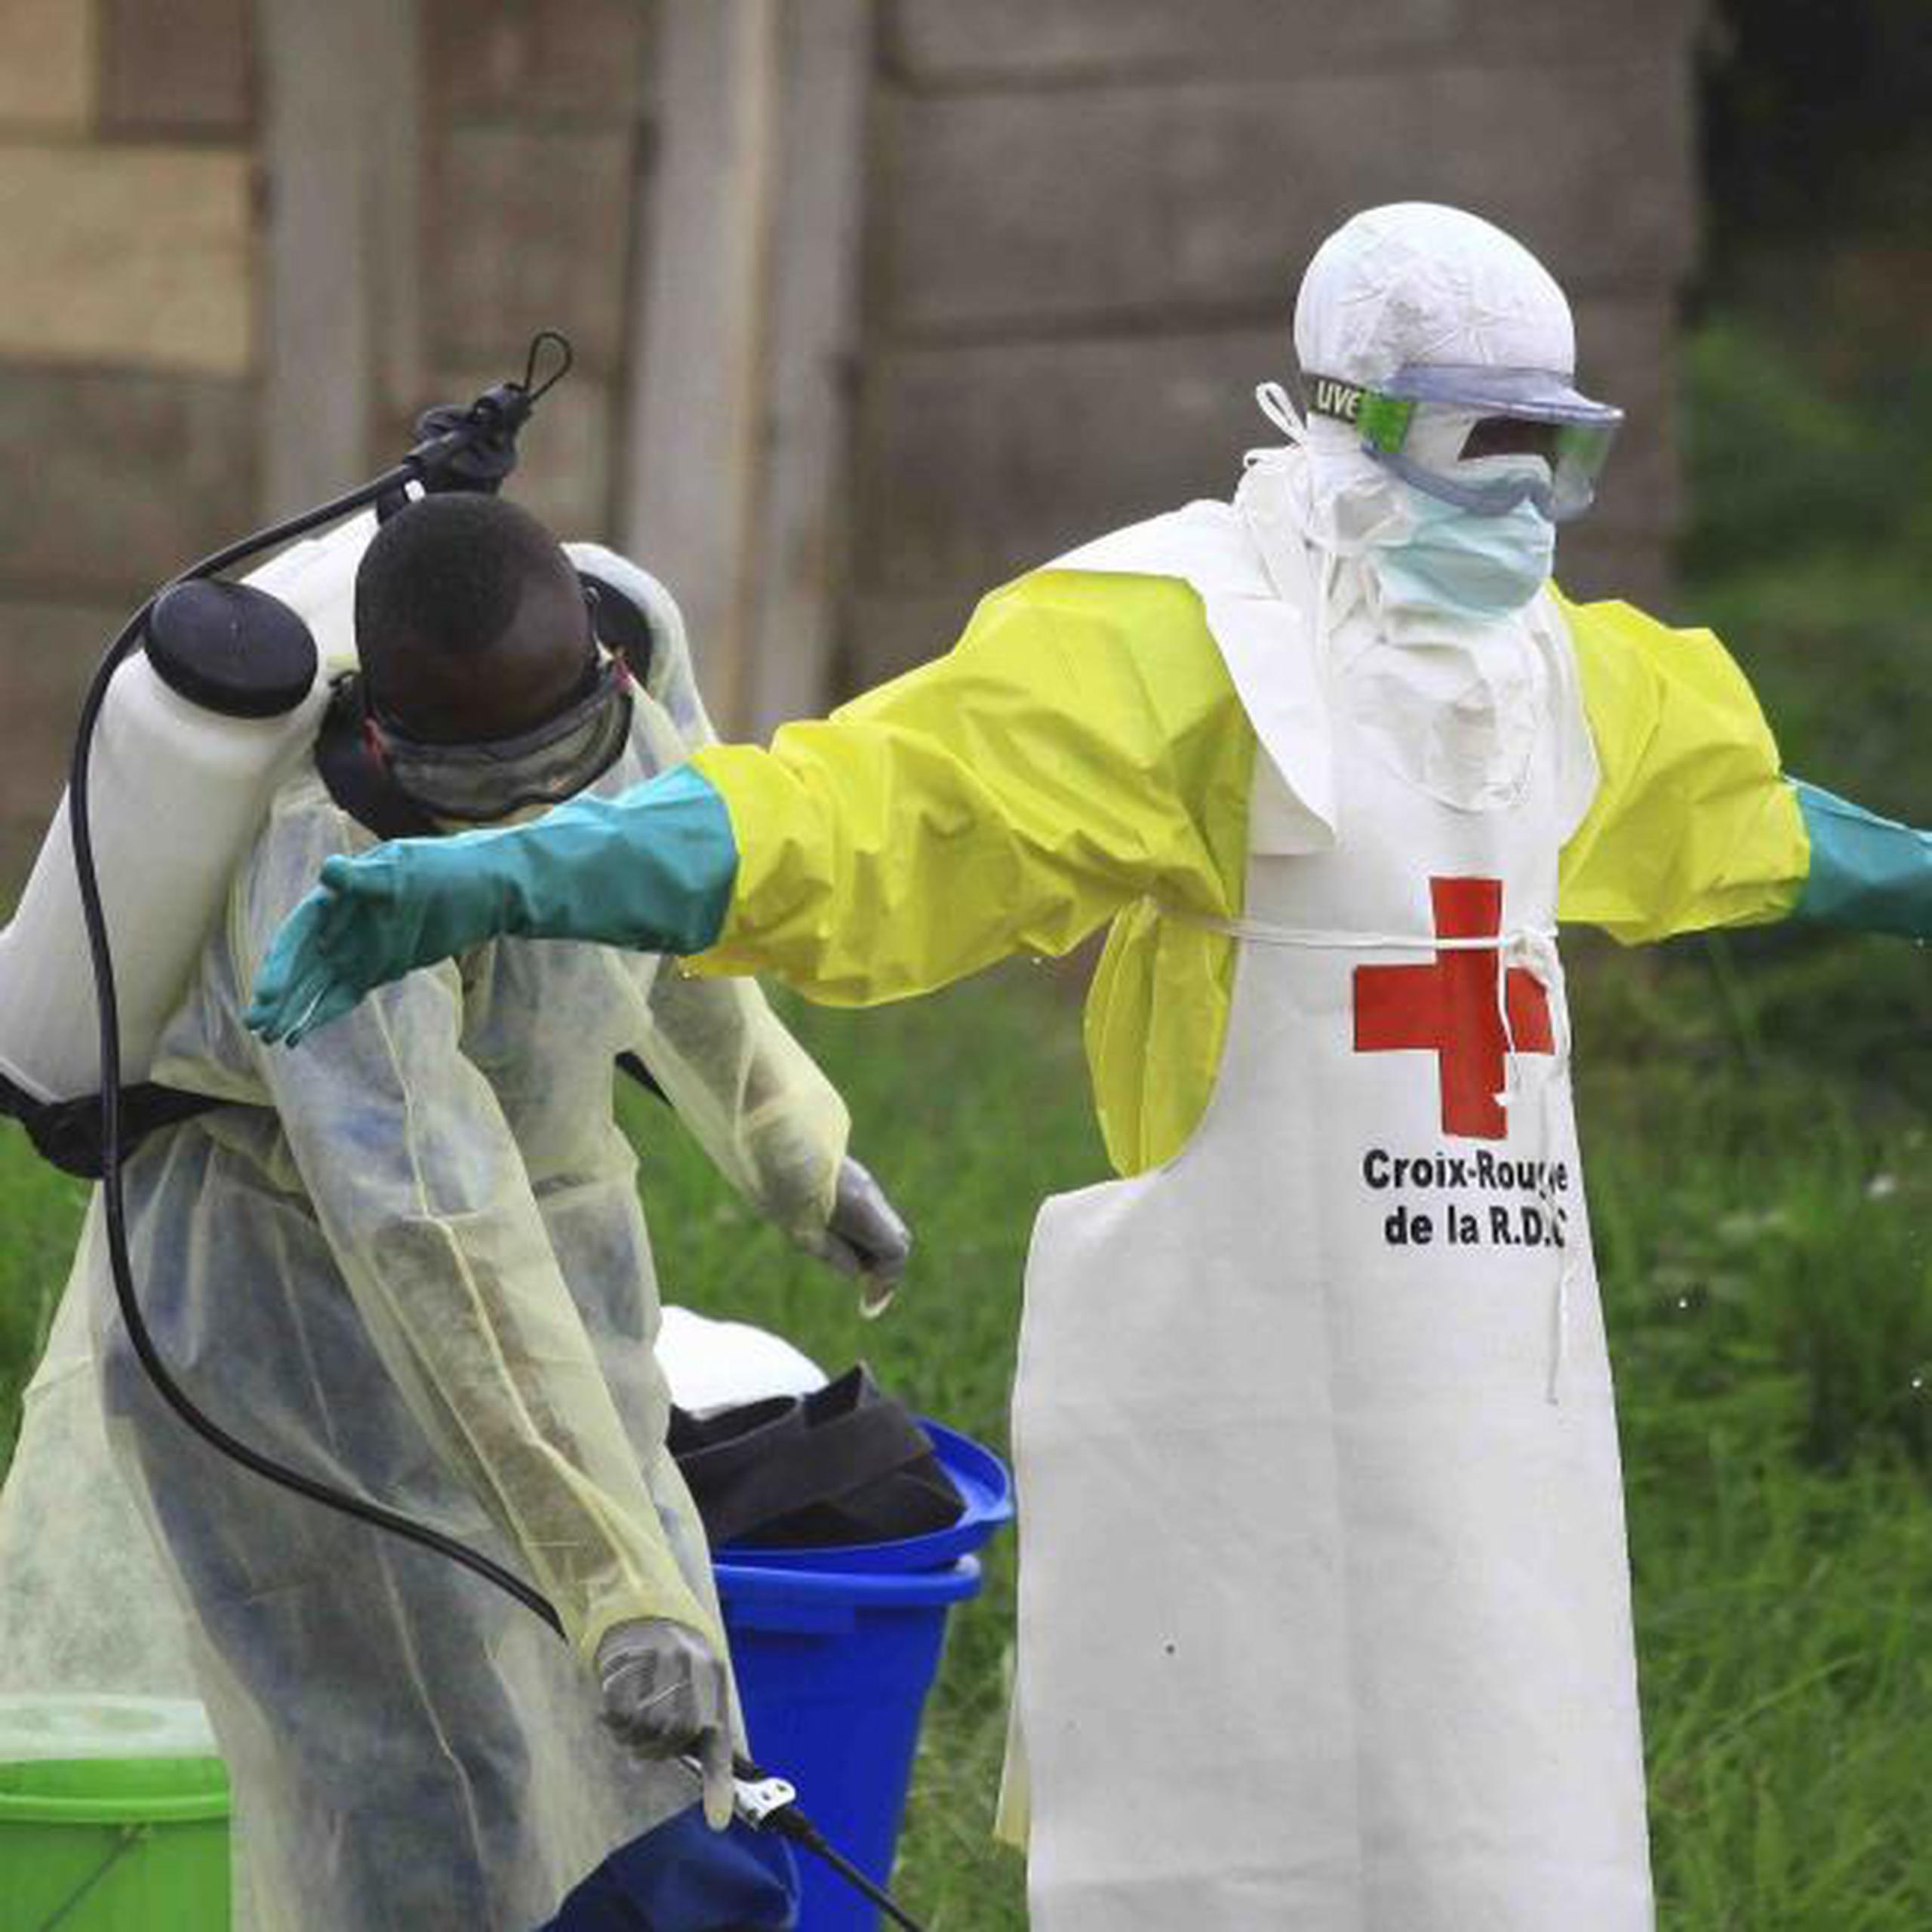 El brote de ébola más devastador a nivel mundial fue declarado en marzo de 2014, con casos que se remontan a diciembre de 2013. (AP / Al-hadji Kudra Maliro)